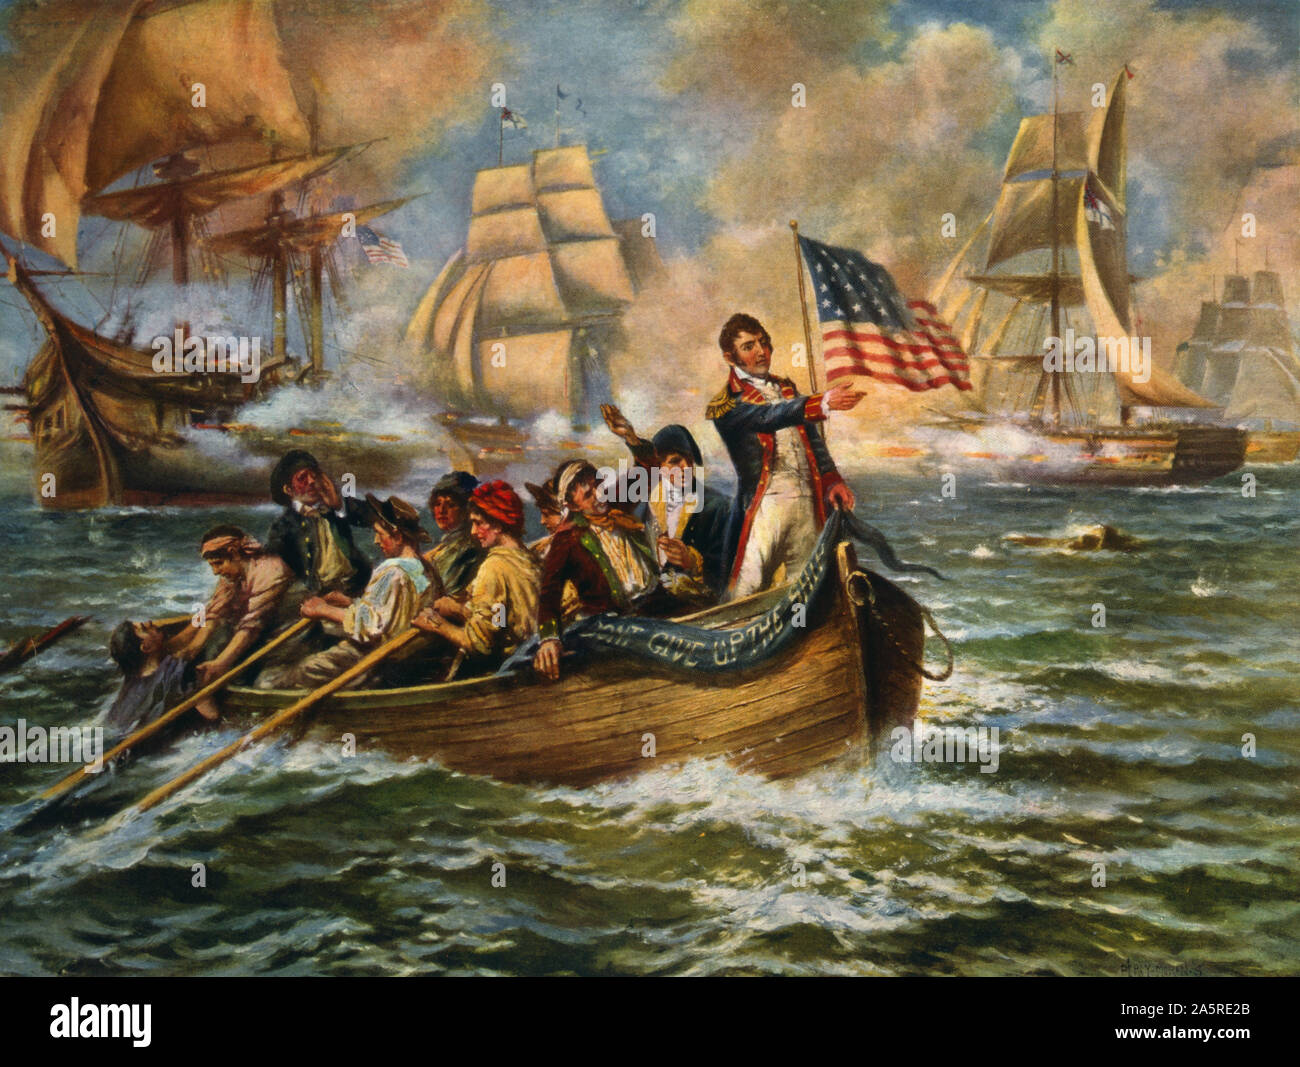 Schlacht auf dem Eriesee während des Krieges von 1812. Nach einer Arbeit von E.Percy Moran. Das Bild zeigt die Amerikaner Oliver Hazard Perry Übertragung von seinem beschädigte Flaggschiff Lawrence auf ein anderes Schiff, die Niagara. Stockfoto